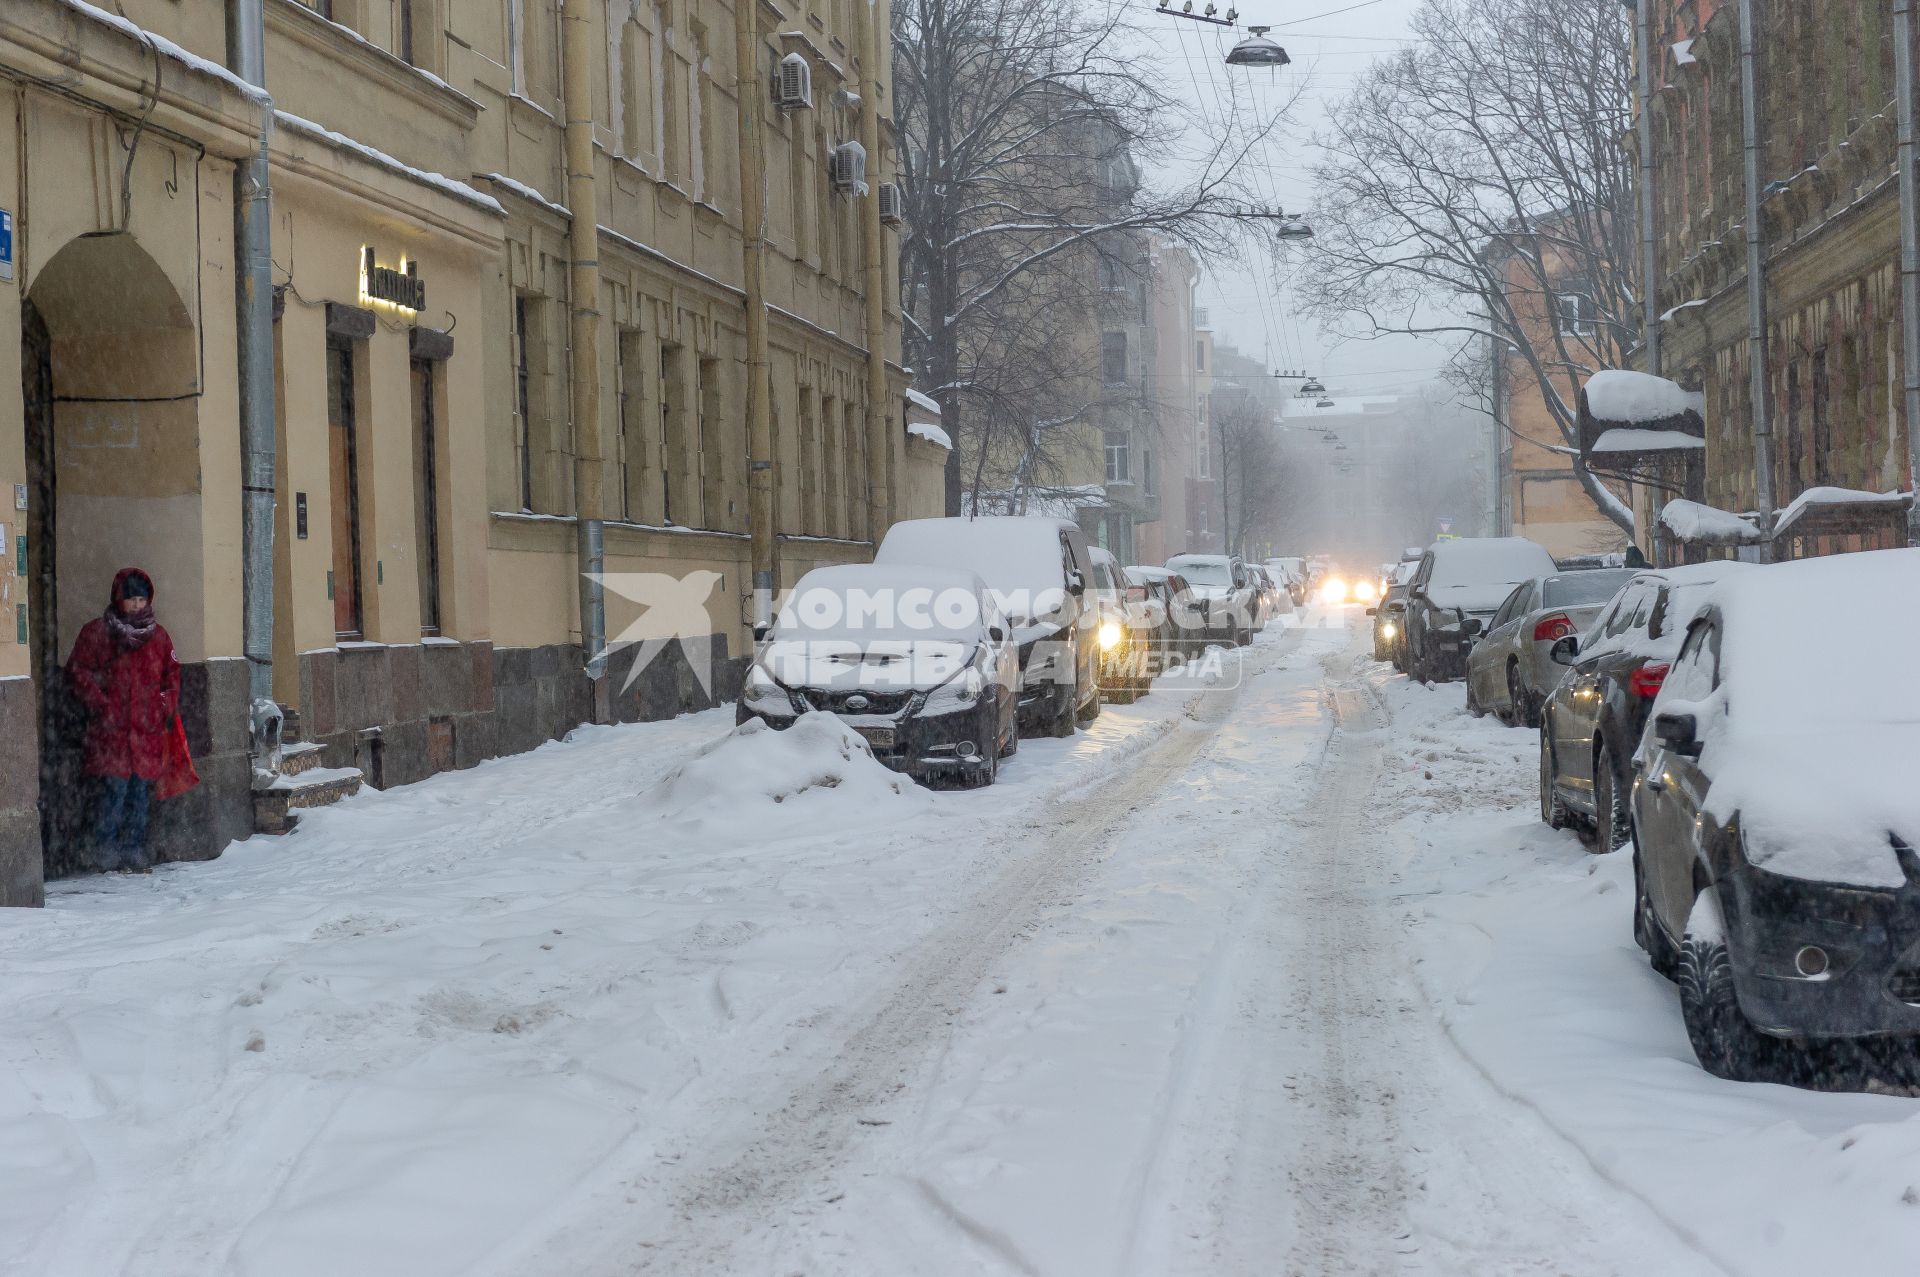 Санкт-Петербург. Машины на заснеженной улице города.